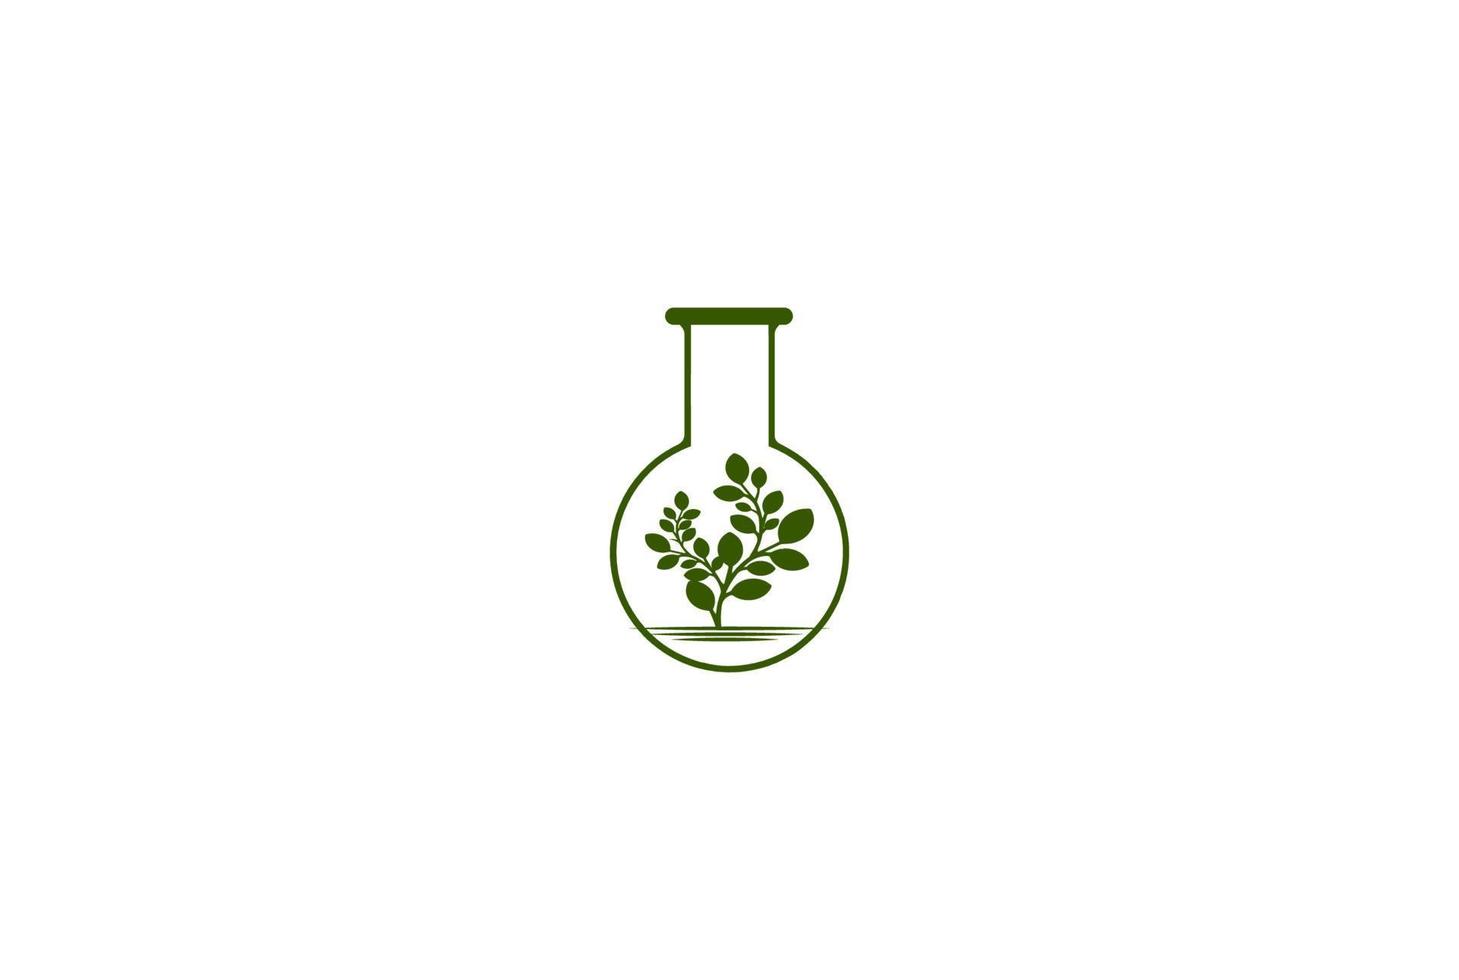 grüne Baumpflanze mit Laborglas für Wissenschaftsforschungslogo-Designvektor vektor